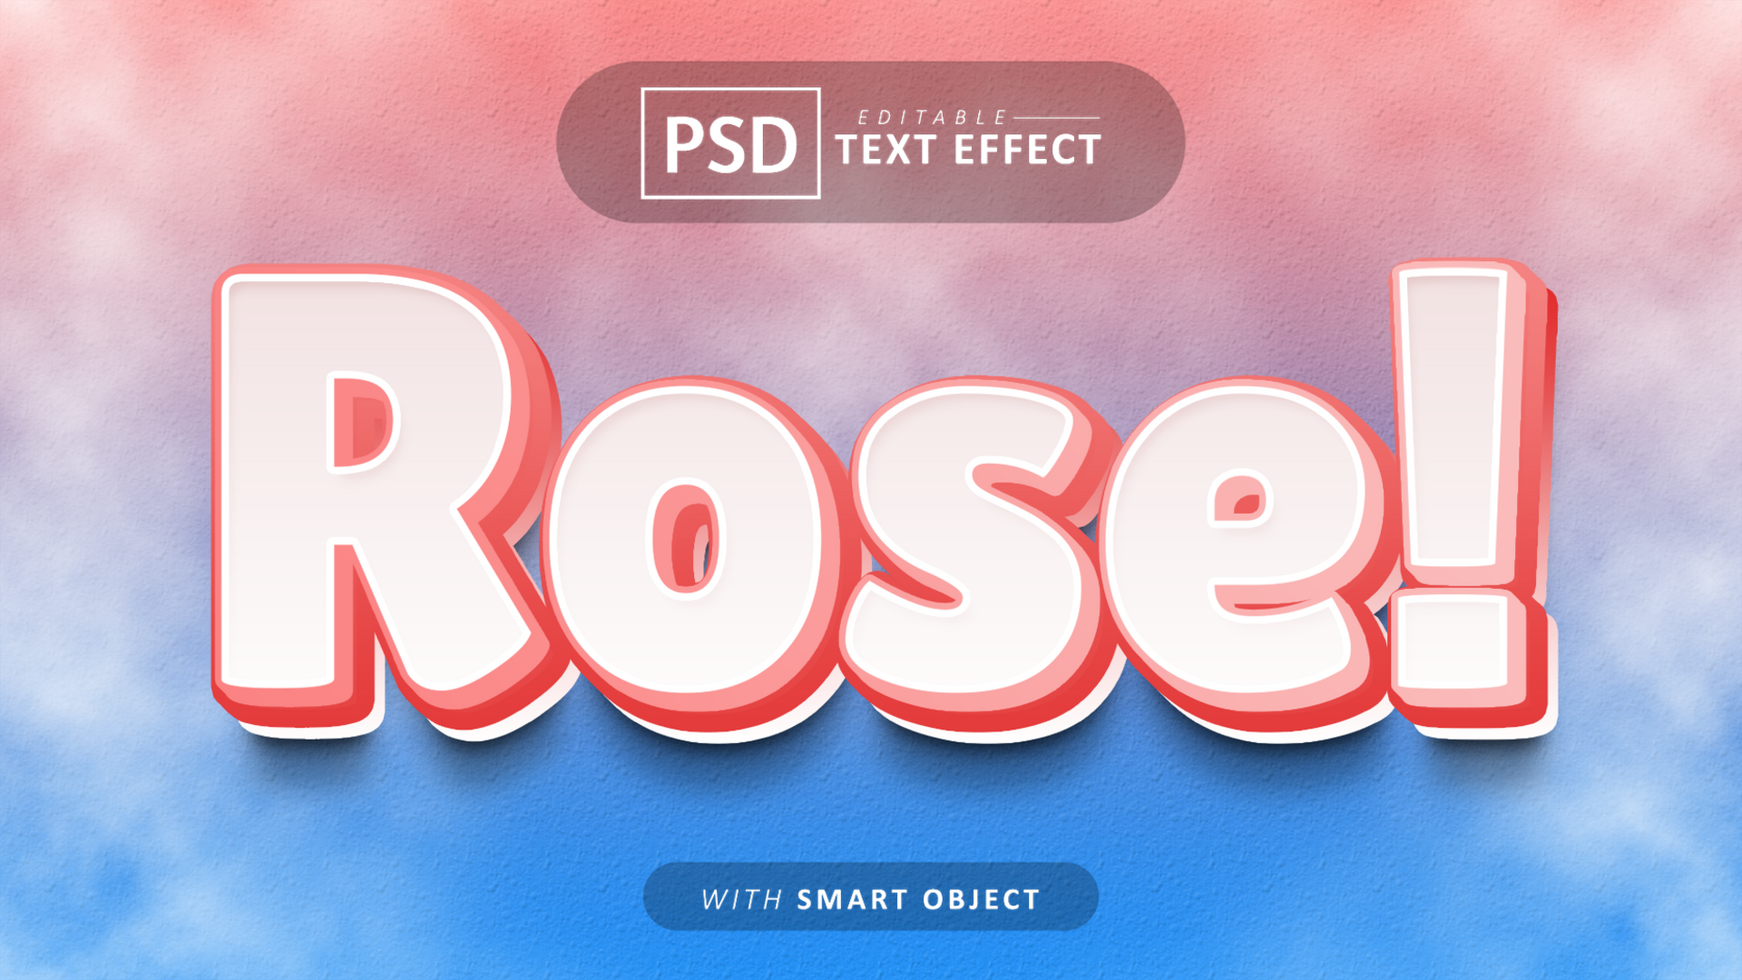 Rose cartoon style text effect editable psd